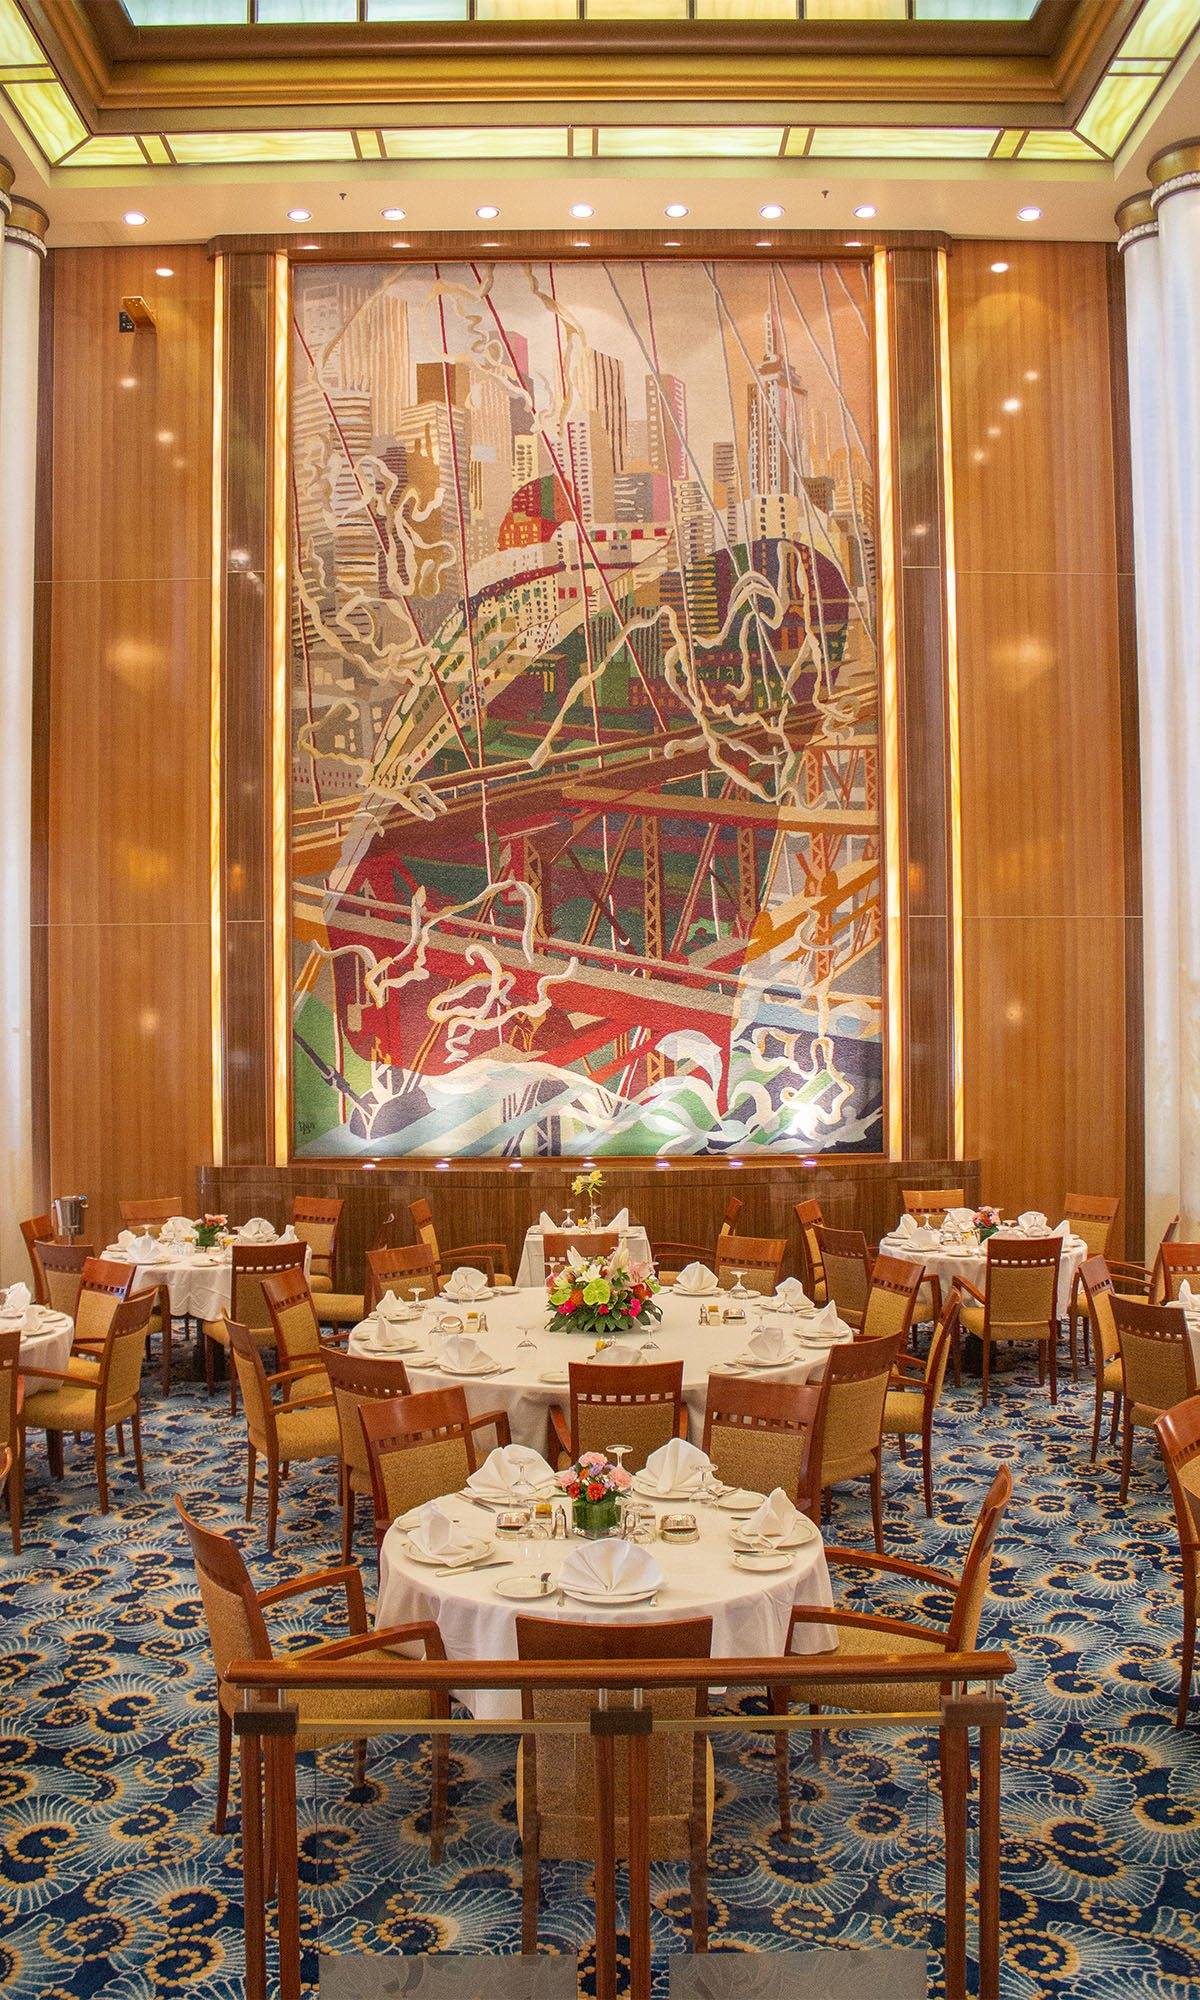 Queen Mary 2 Britannia Restaurant